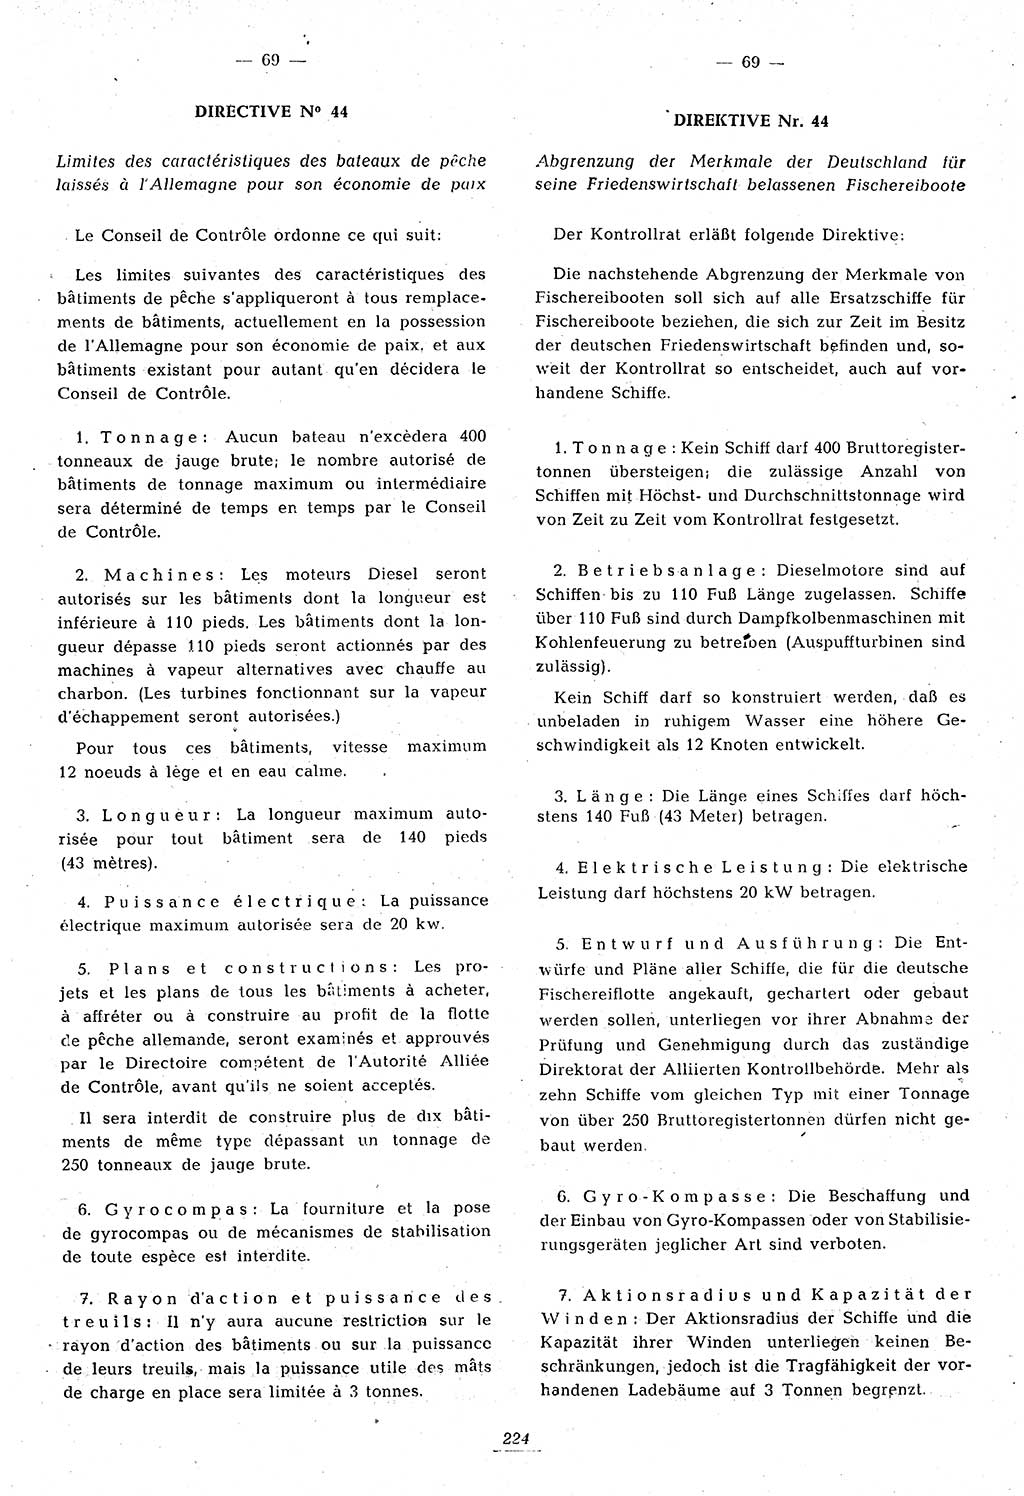 Amtsblatt des Kontrollrats (ABlKR) in Deutschland 1946, Seite 224/2 (ABlKR Dtl. 1946, S. 224/2)